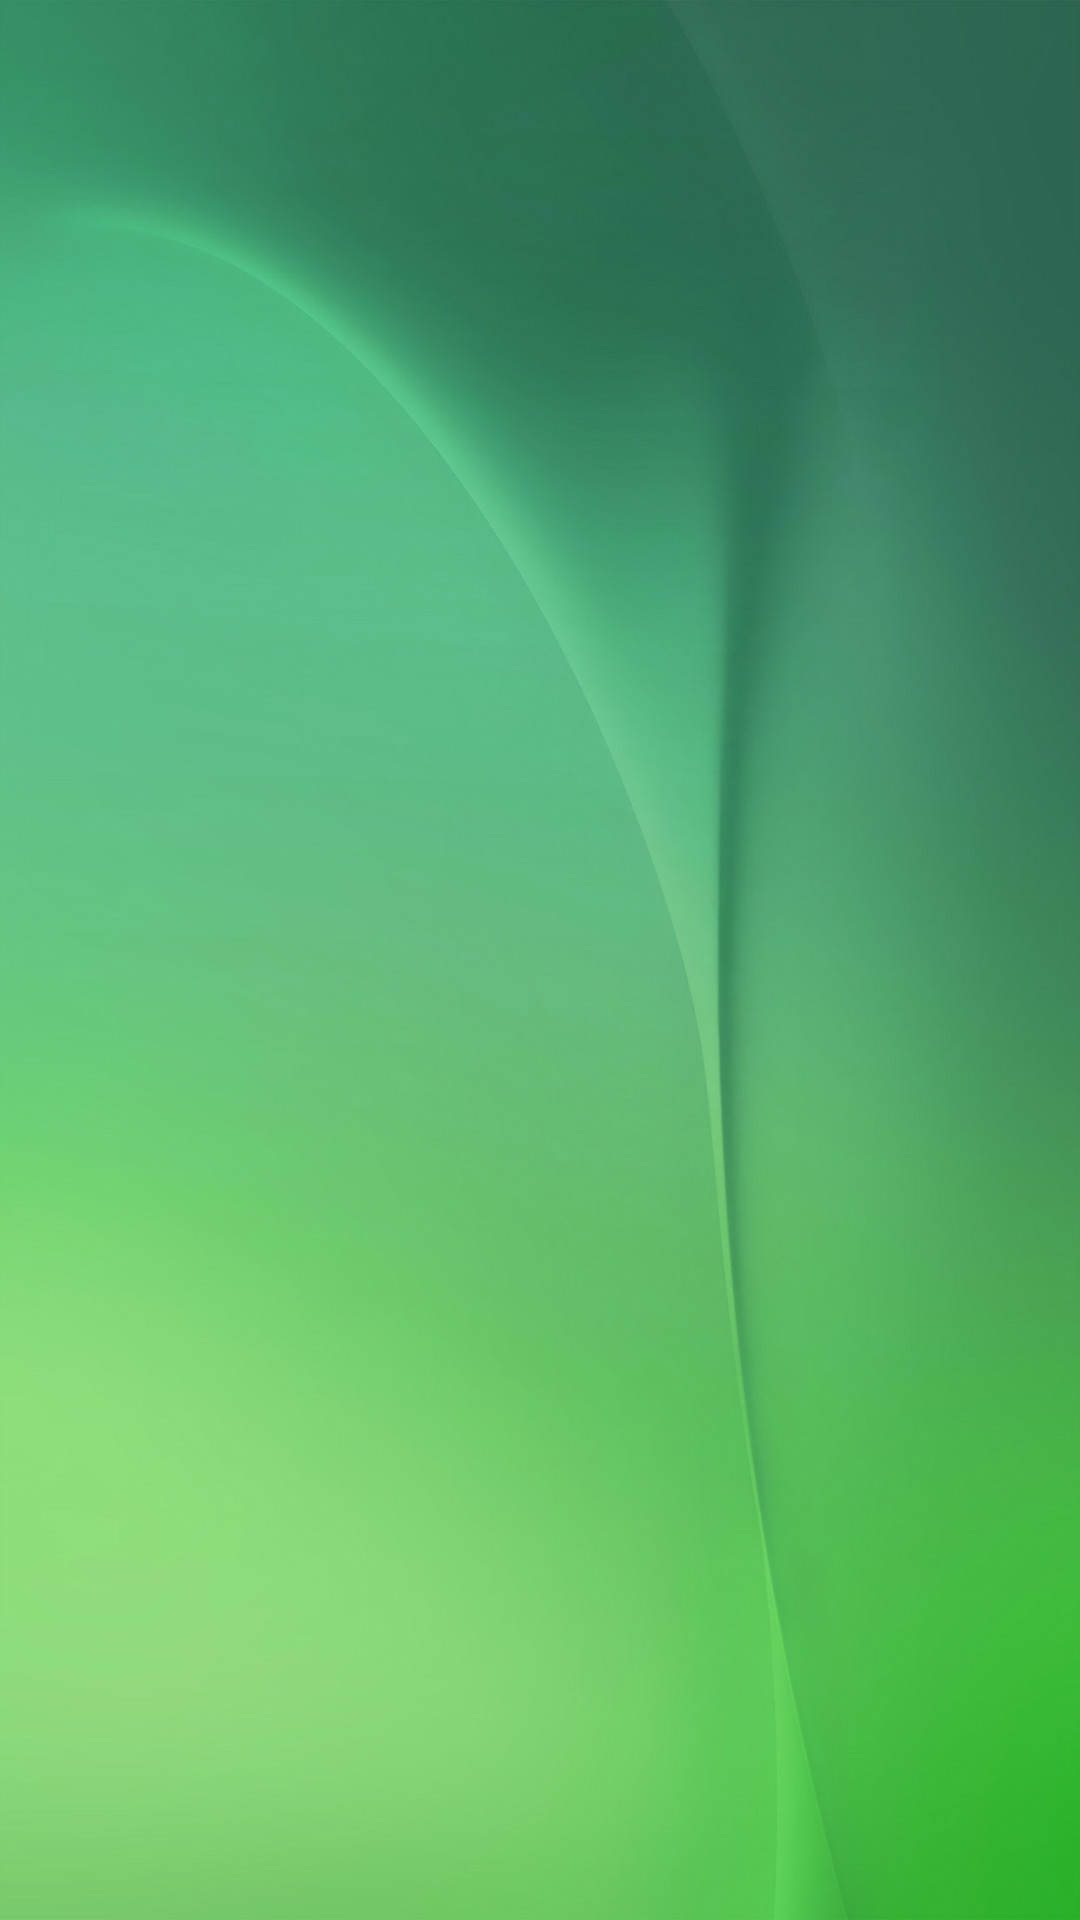 1080x1920 Deep Ocean Abstract Digital Soft Green Pattern iPhone 6 wallpaper